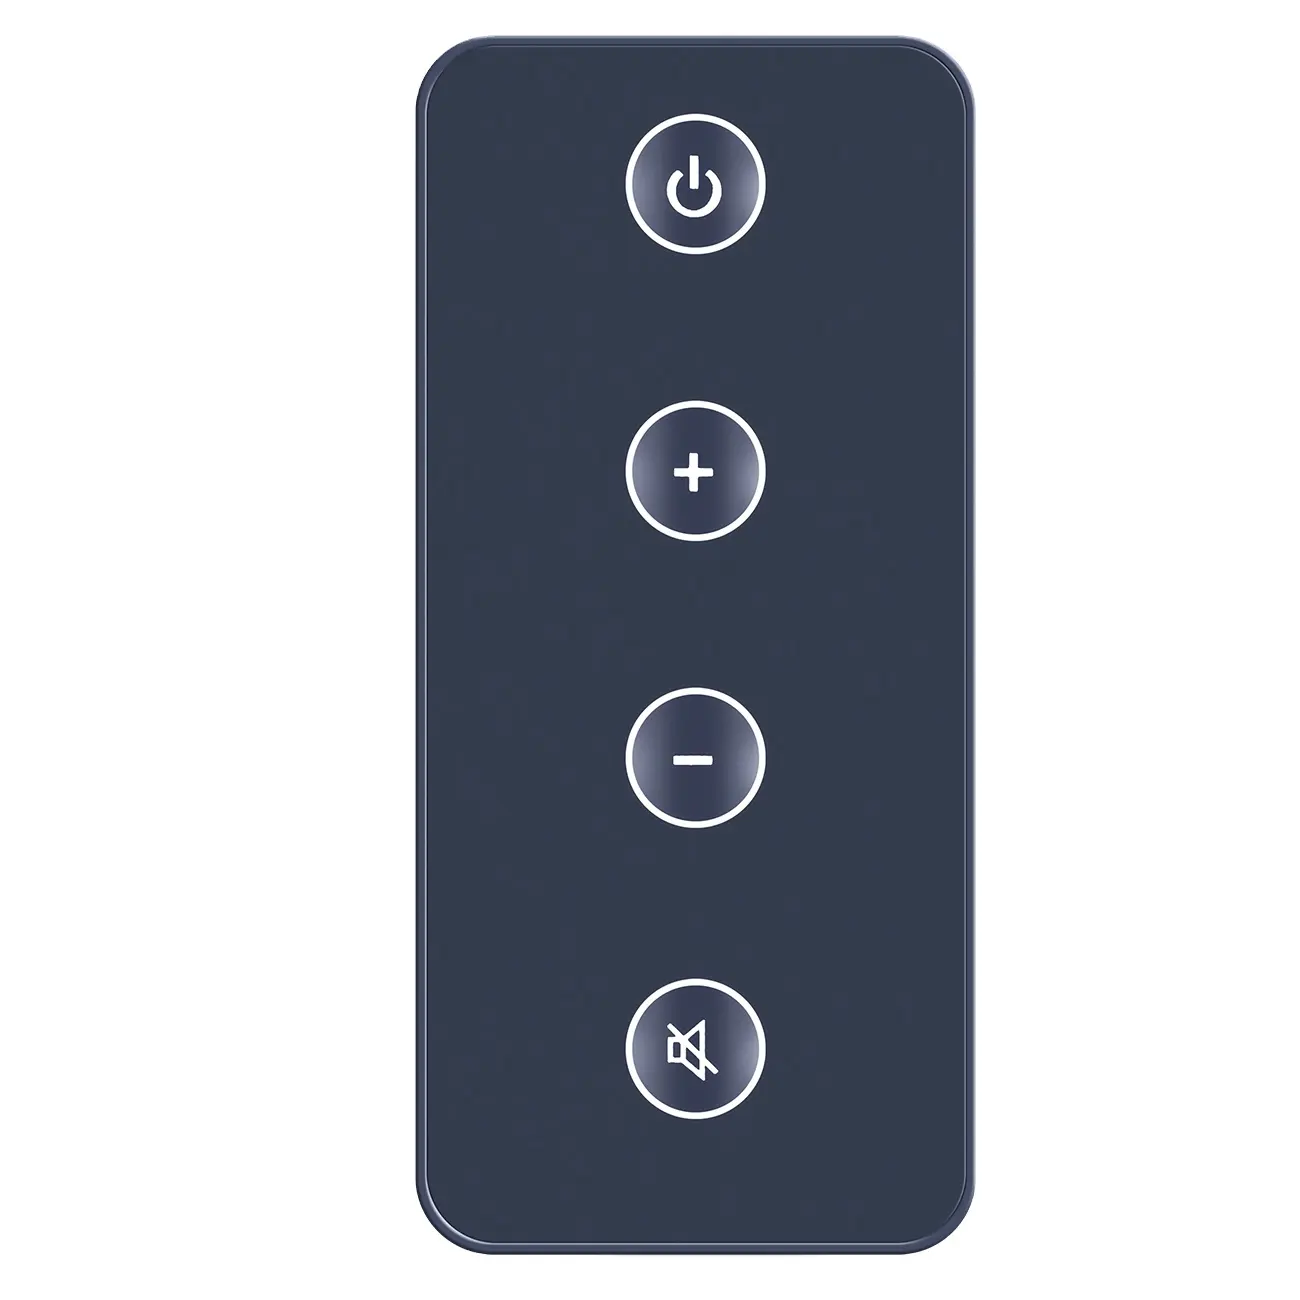 Pengganti Pemutar CD Home Media Remote Control Audio Yang Berguna untuk Bose Solo 5 15 Series Ii Pengontrol Sistem Suara Musik